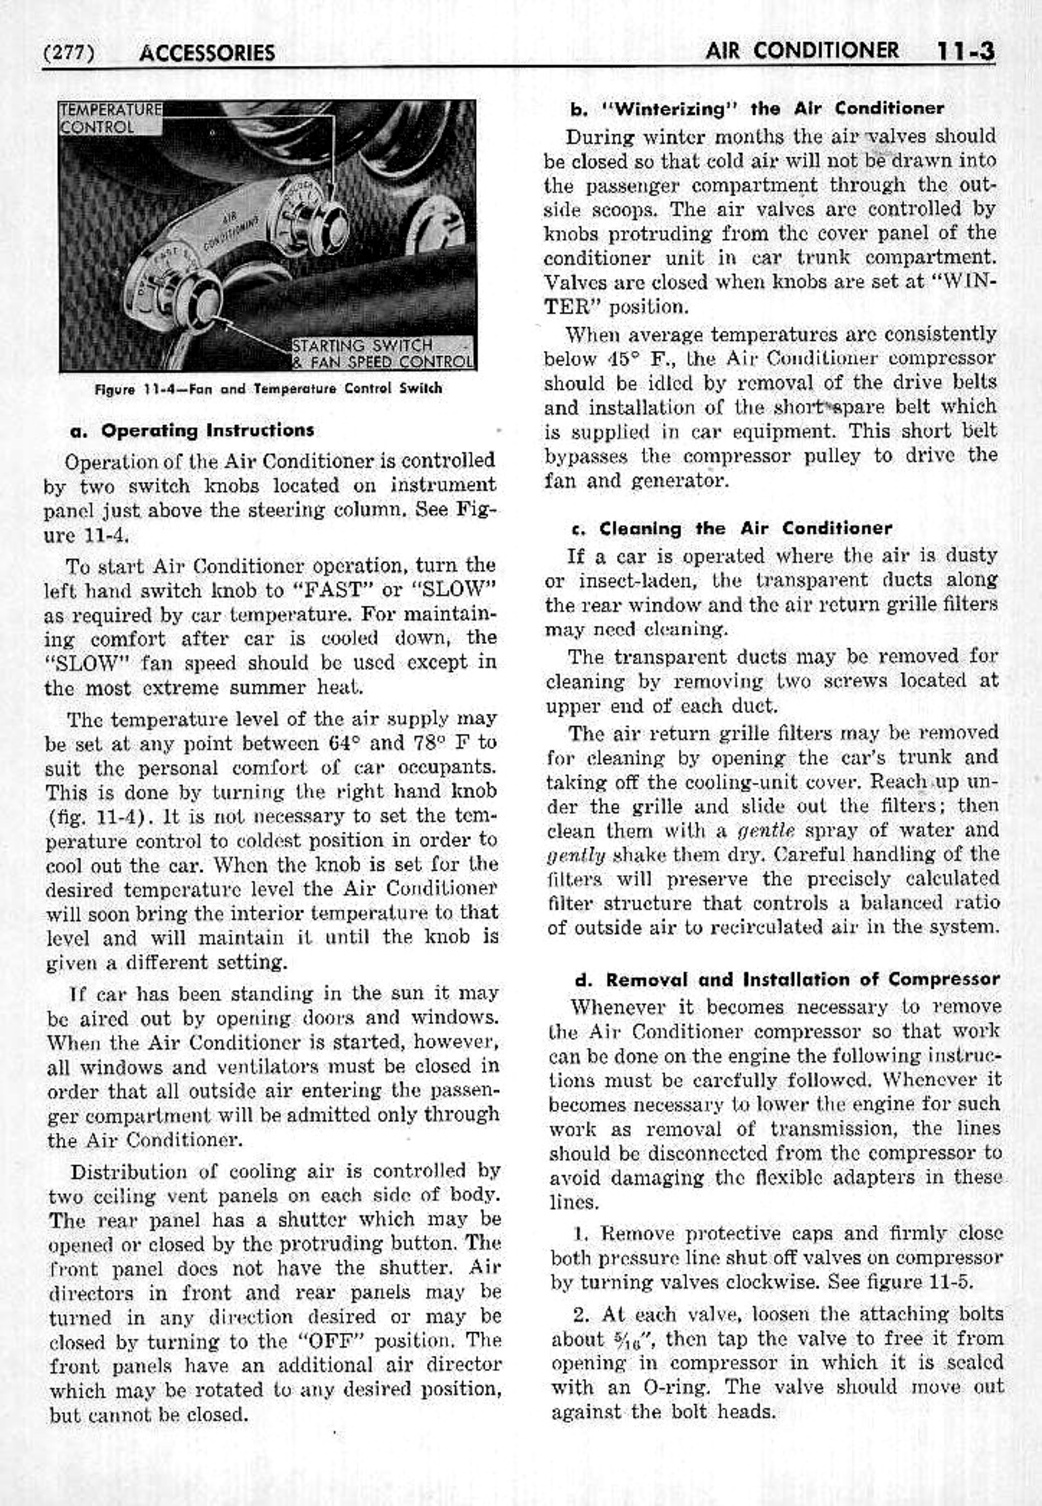 n_12 1953 Buick Shop Manual - Accessories-003-003.jpg